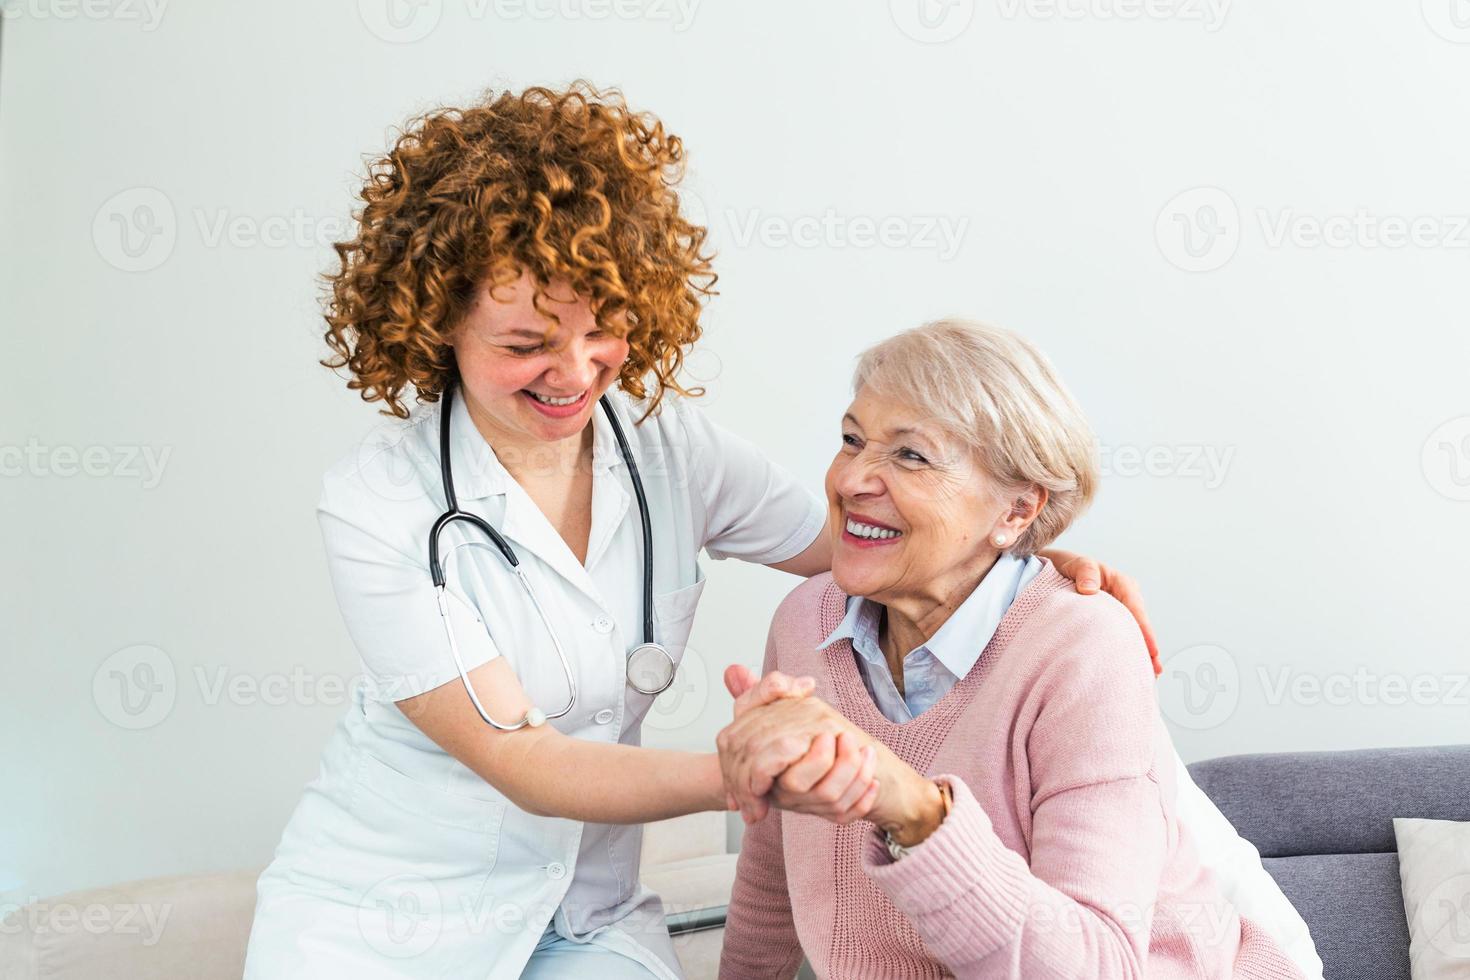 jeune soignant adorable et pupille heureuse. image du soignant et de la personne âgée se reposant dans le salon. soignant souriant prenant soin d'une femme âgée heureuse photo